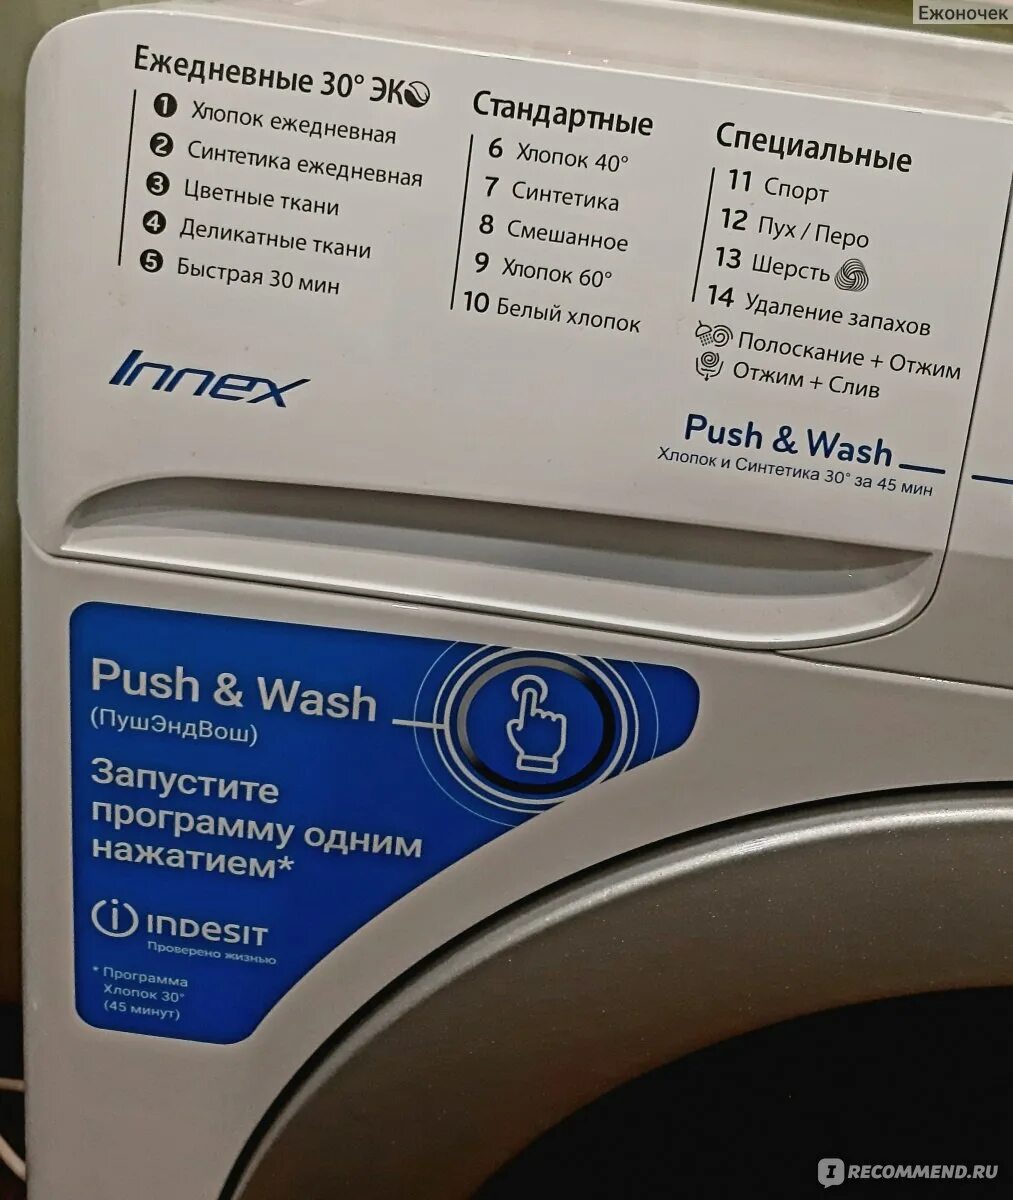 Индезит инекс стиральная. Стиральная машина Innex Push and Wash. Стиральная машина Индезит Innex 6кг.